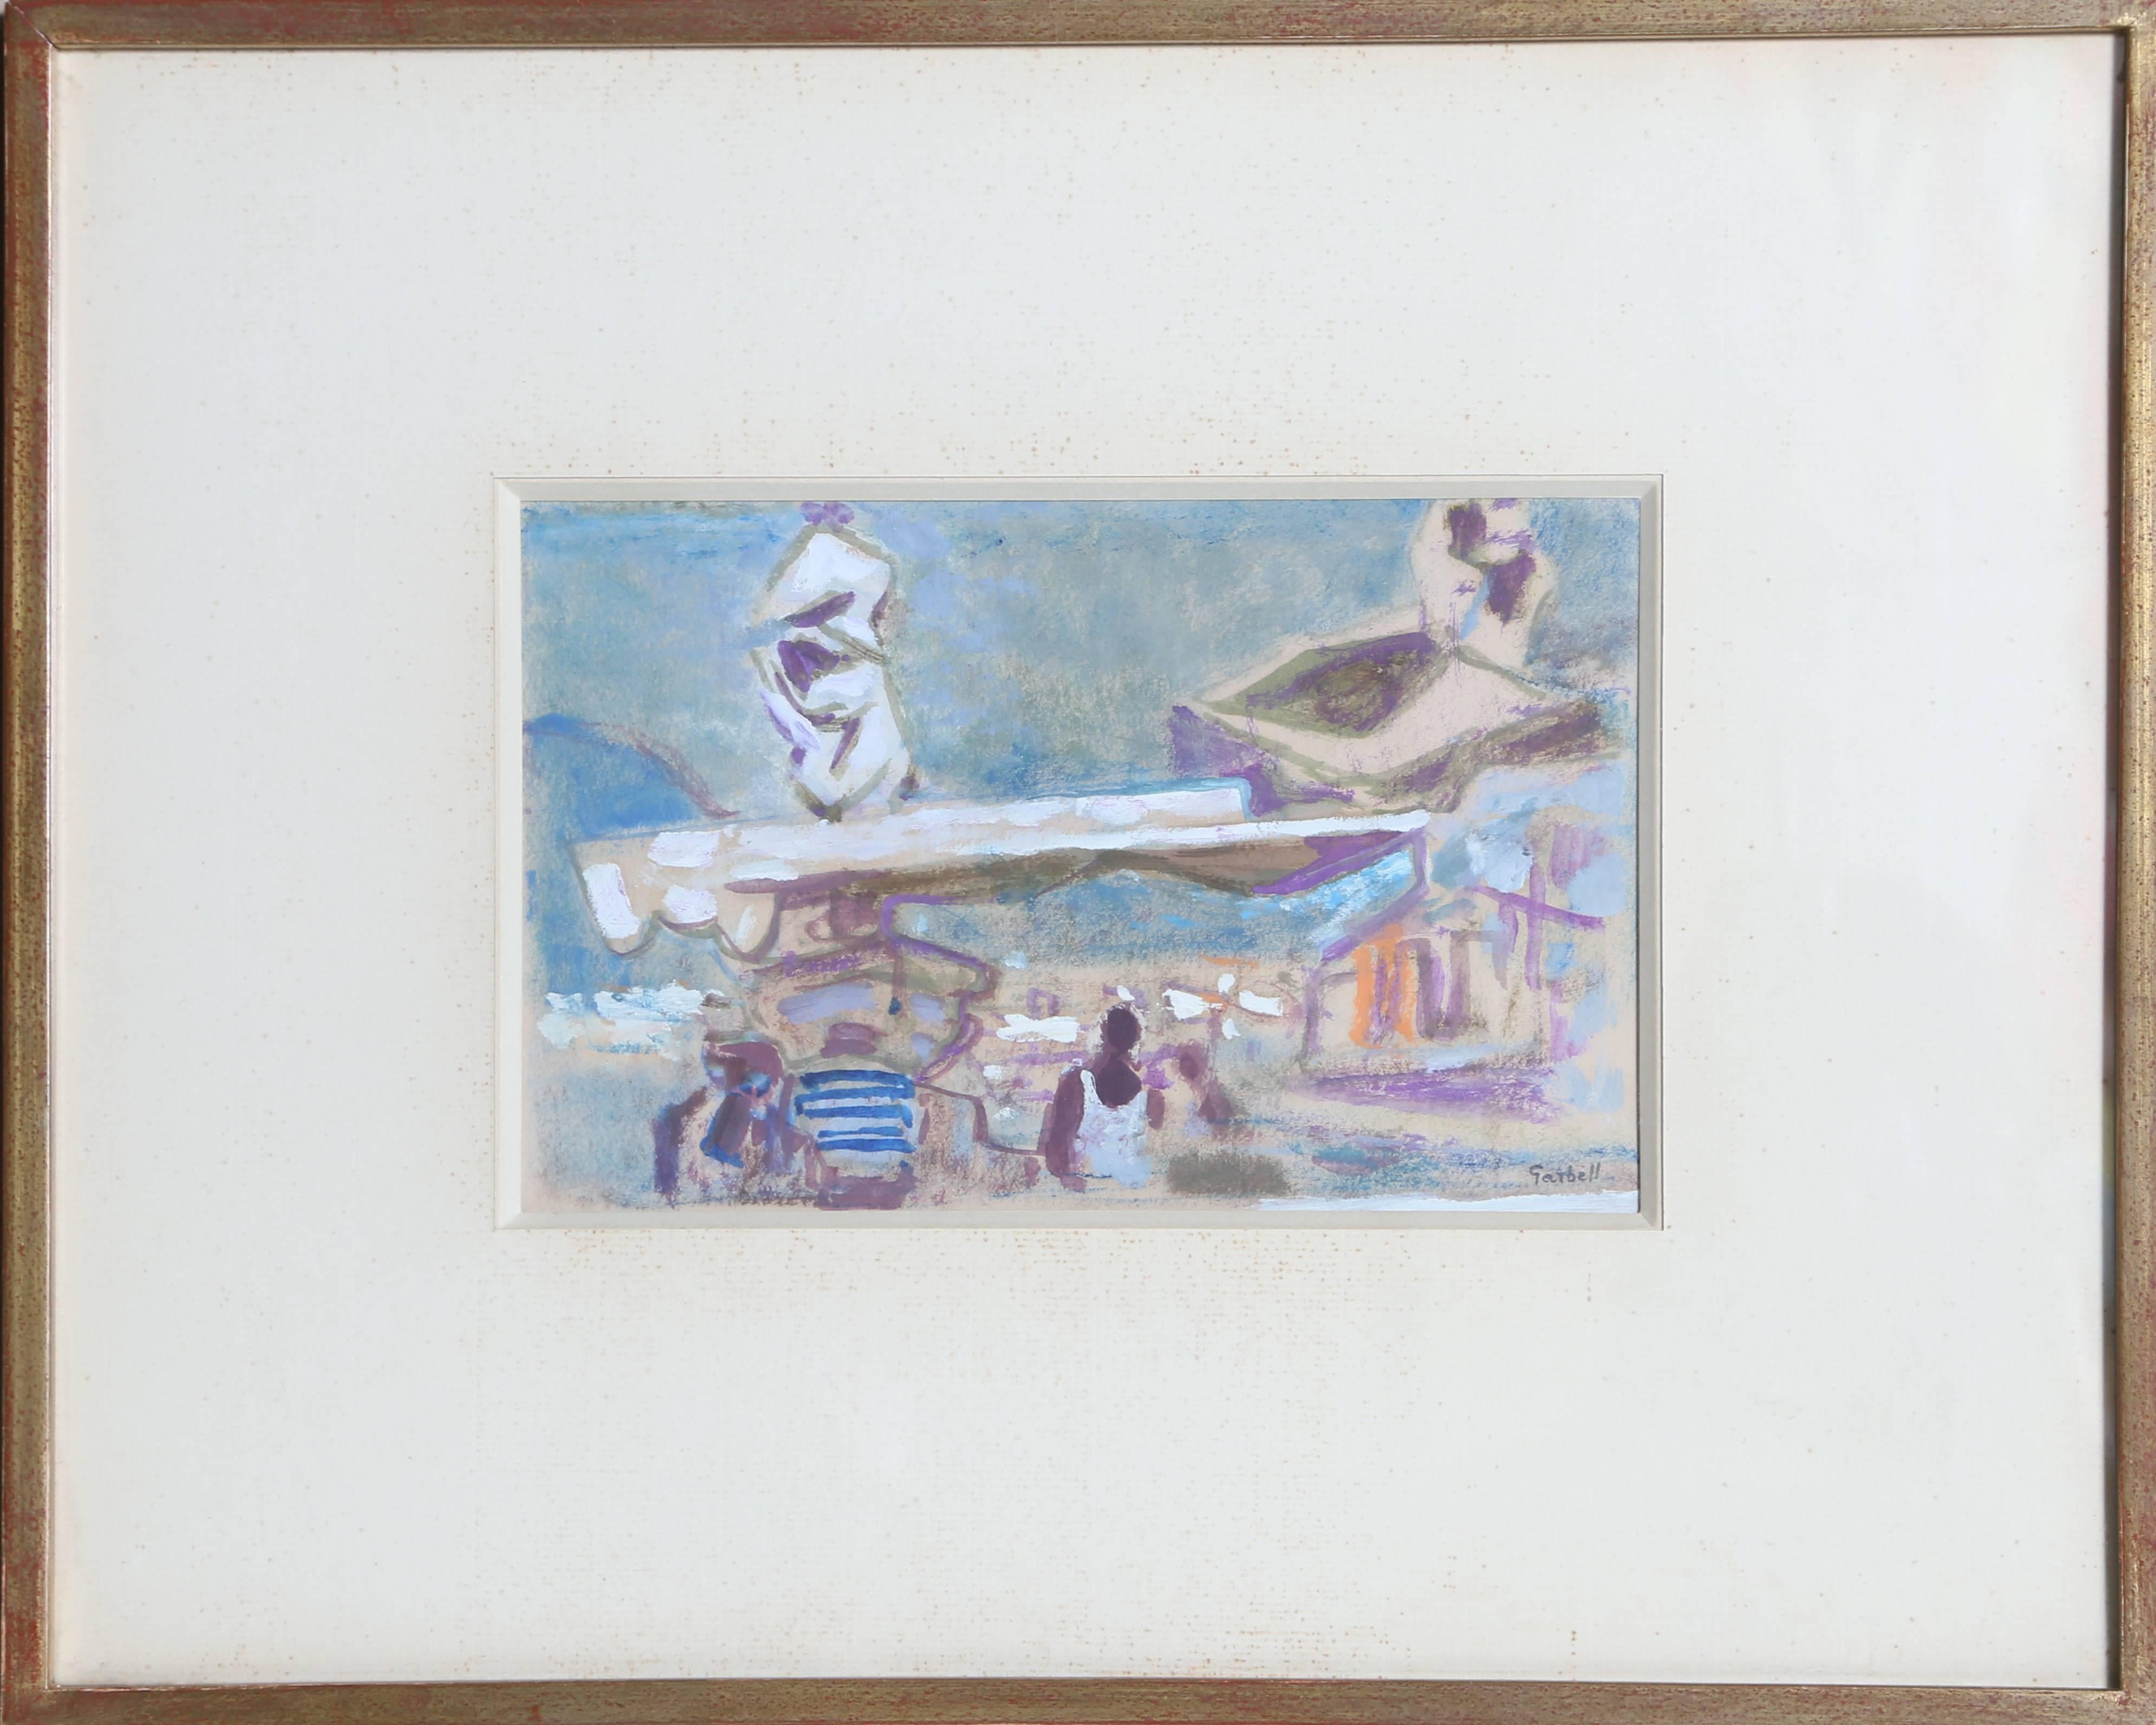 Tropez, signiertes Gouache-Gemälde von Alexandre Sacha Garbell aus den 1950er Jahren